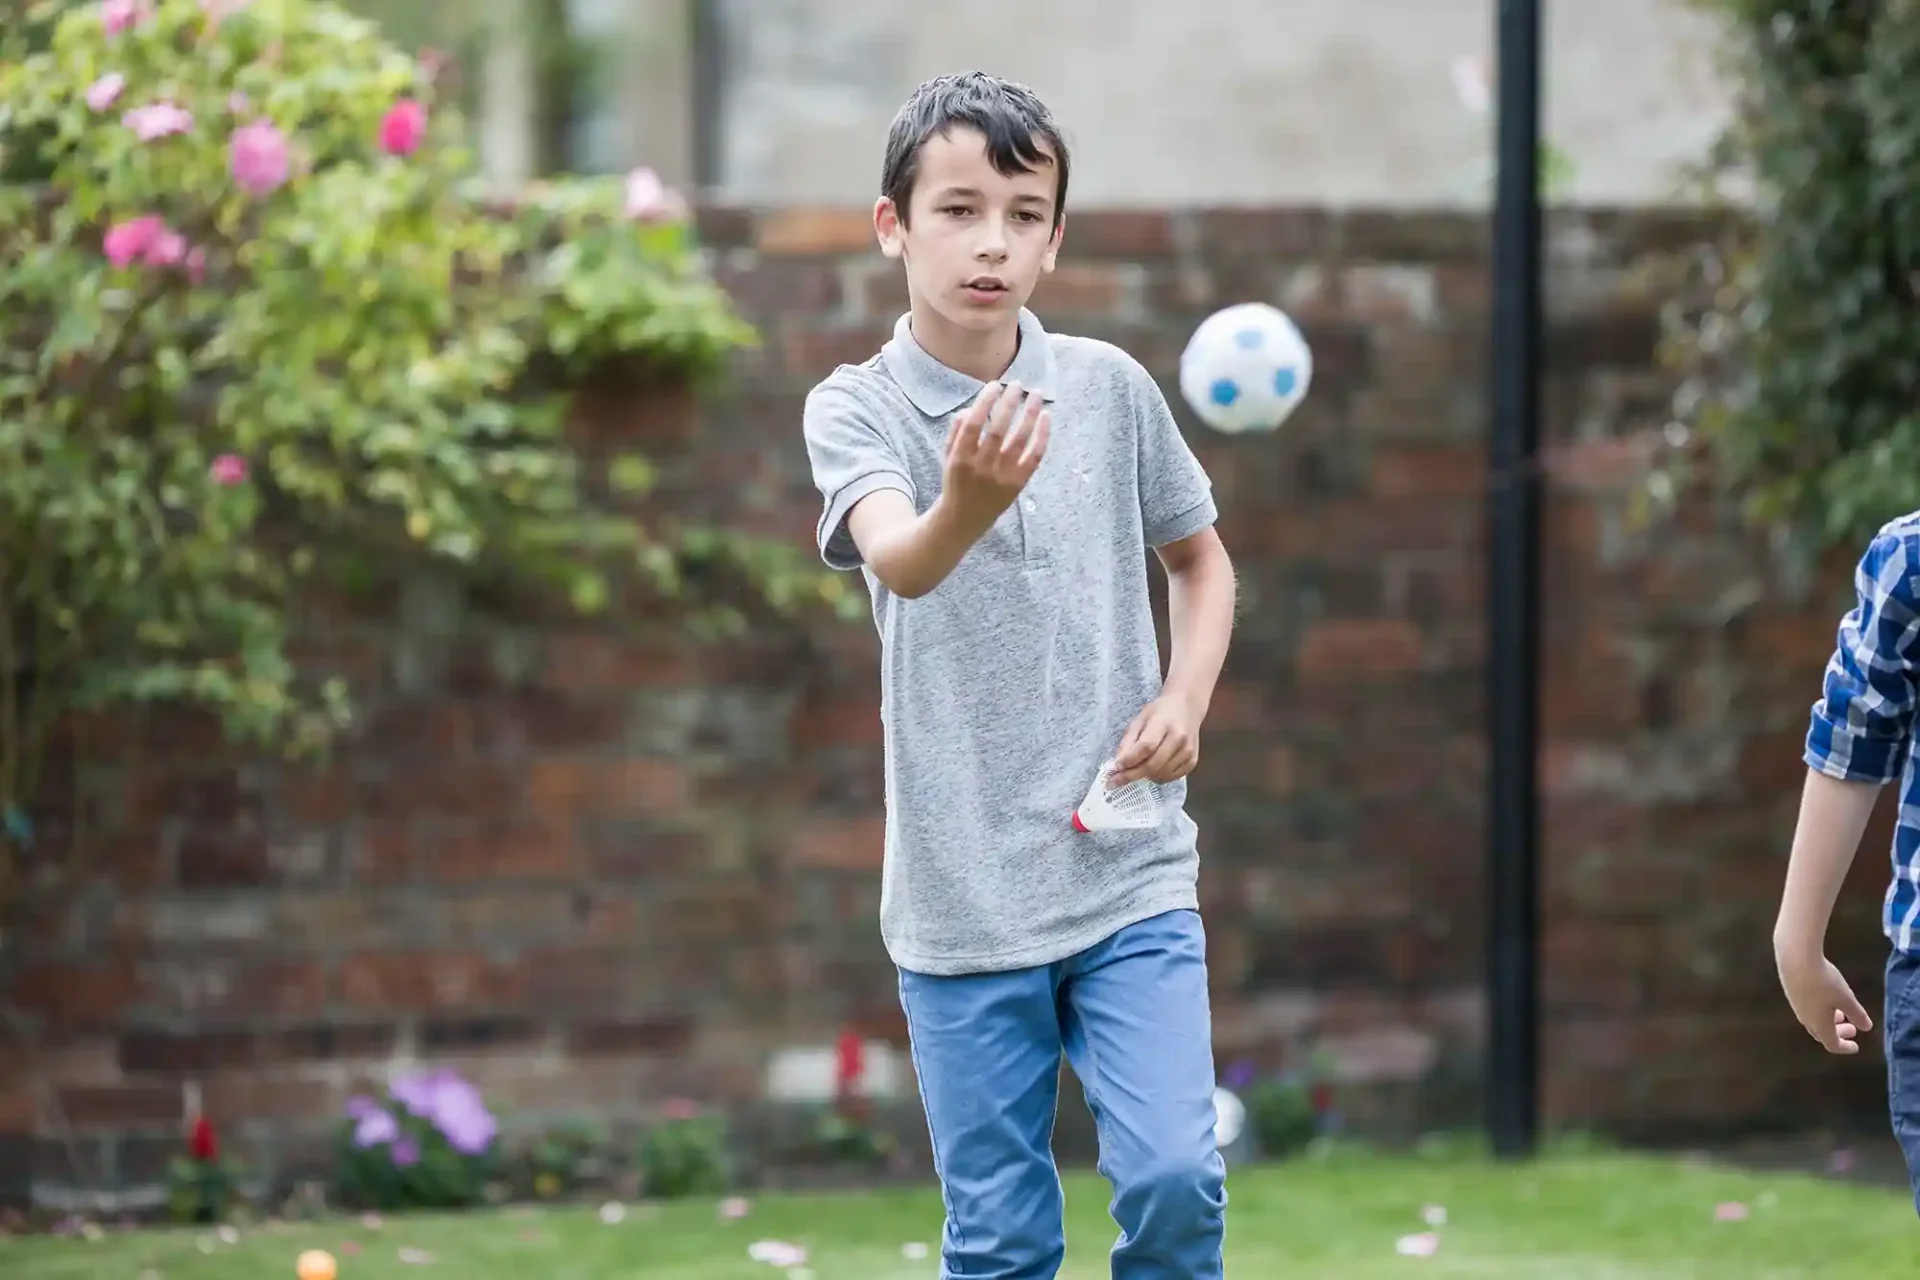 boy throwing a ball